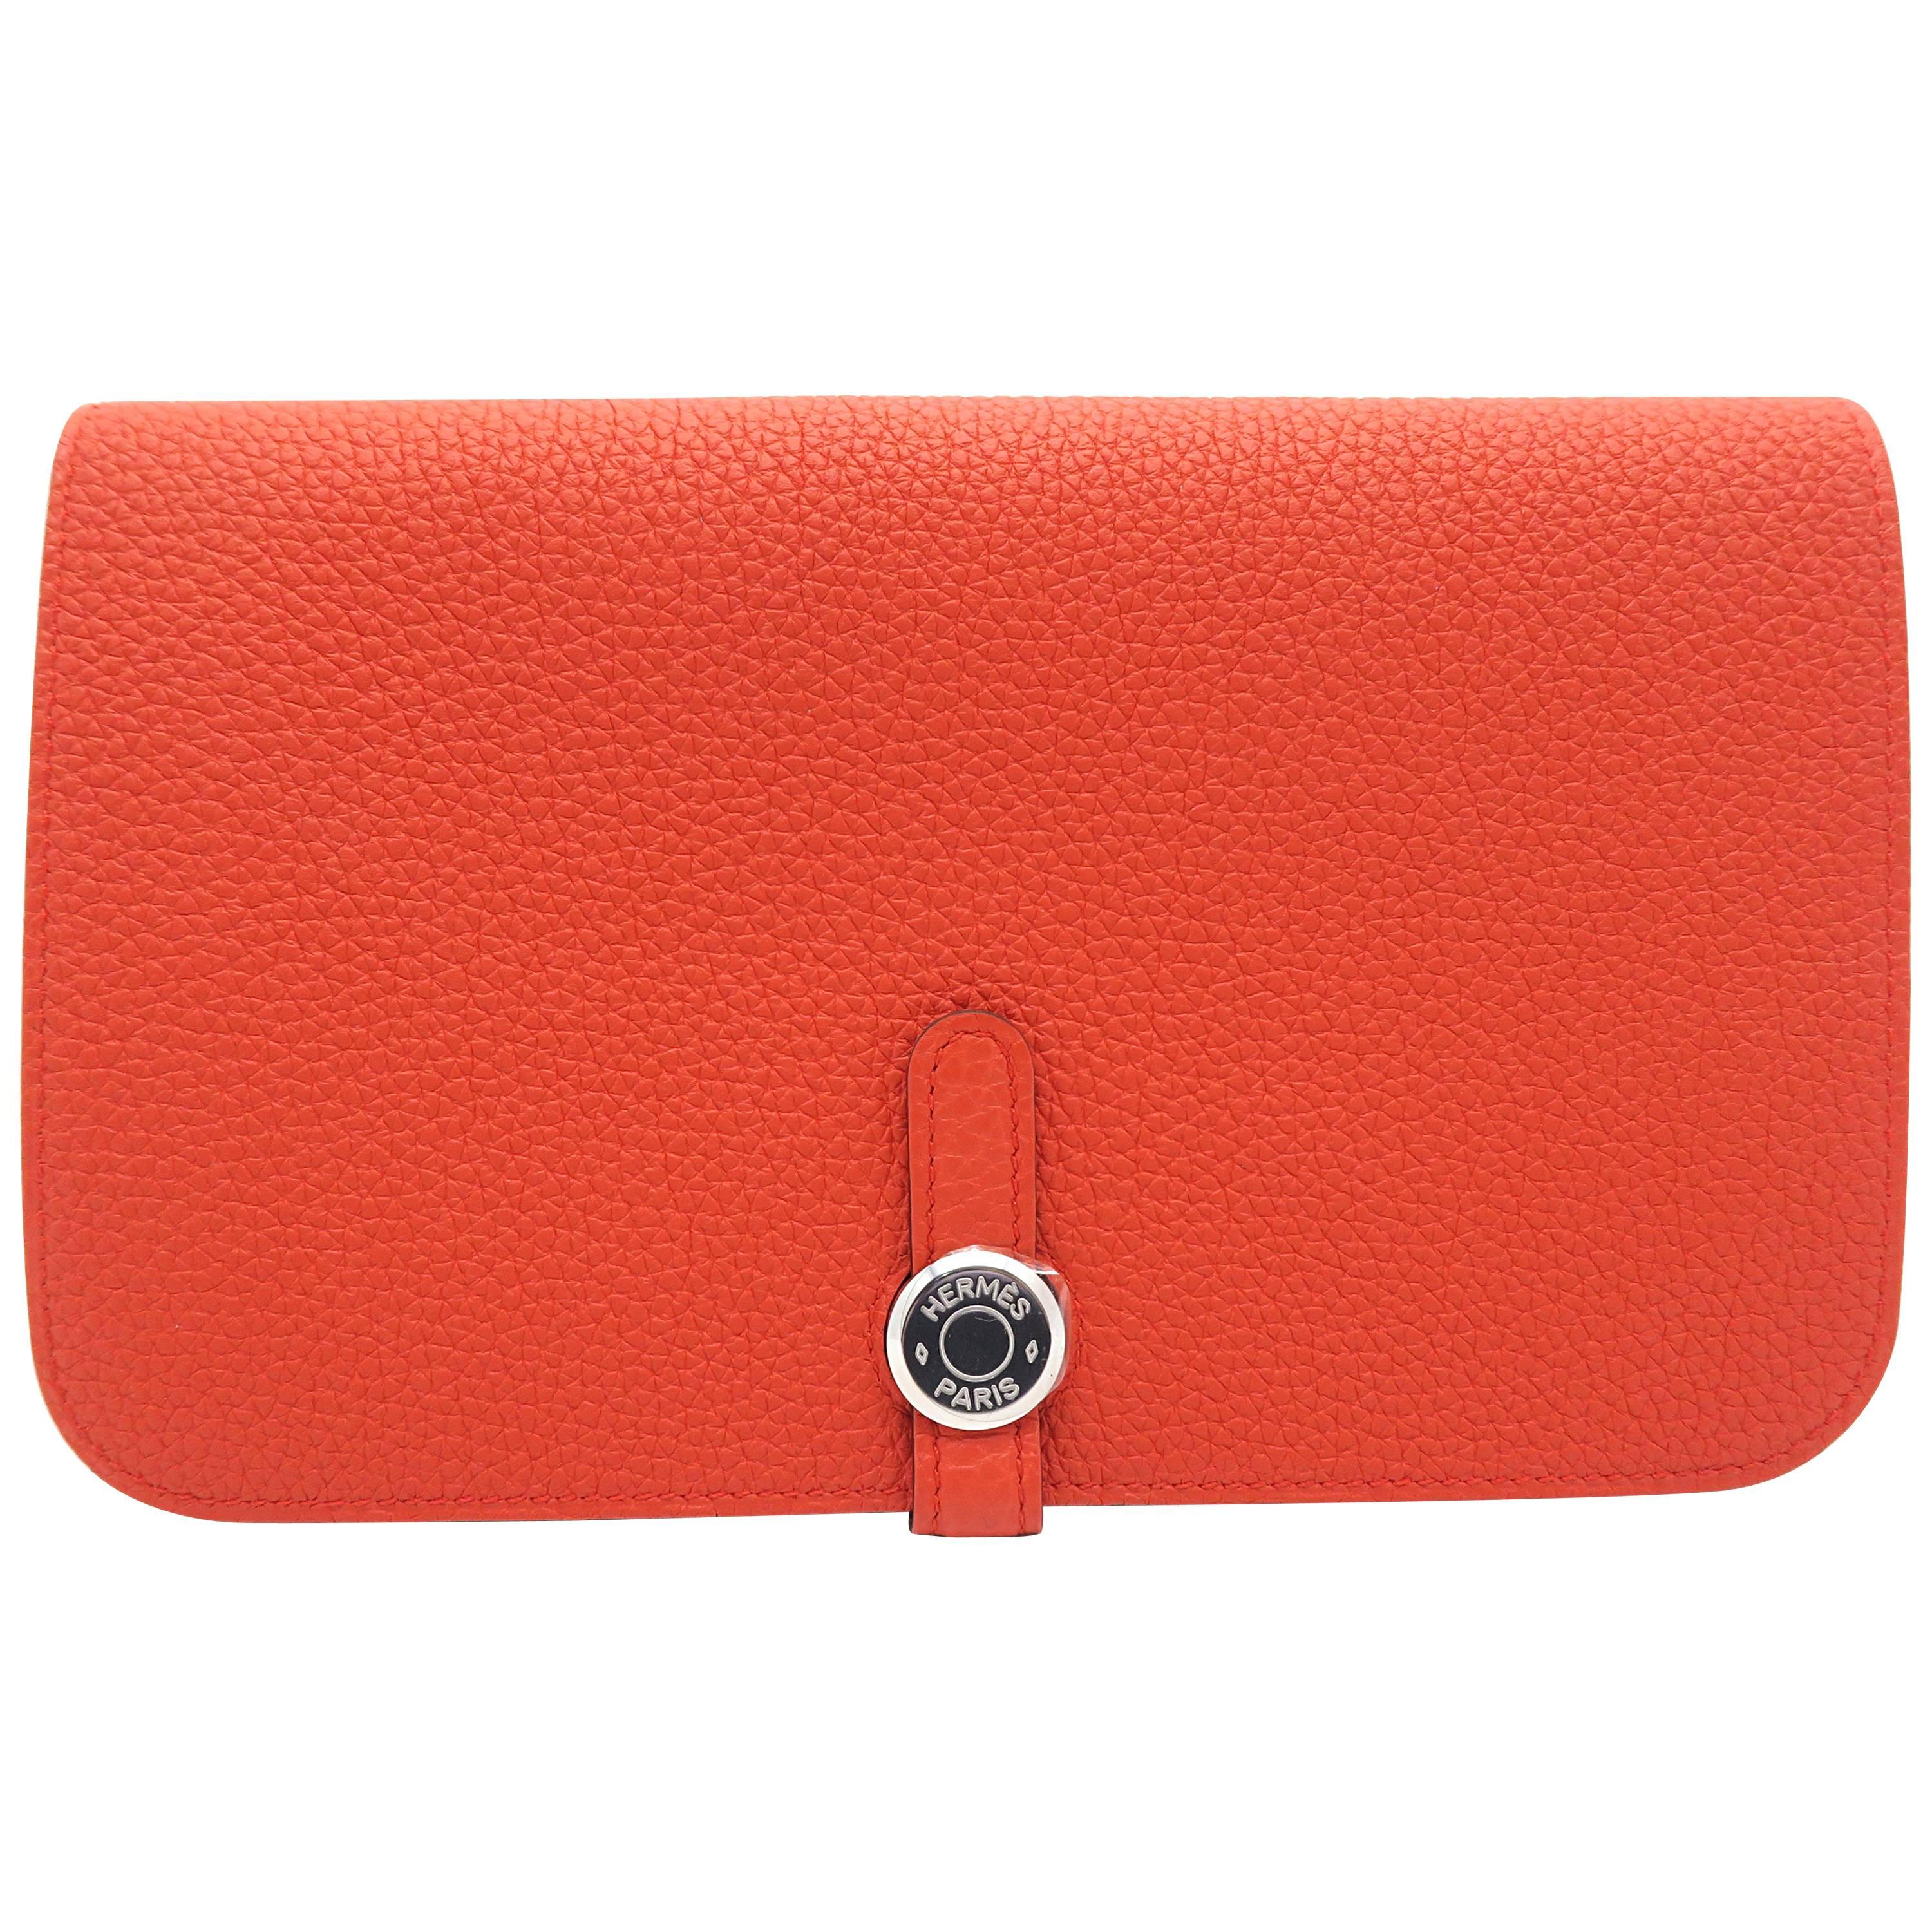 Hermes Dogon GM Orange / Capucine Togo Leather SHW Long Wallet For Sale